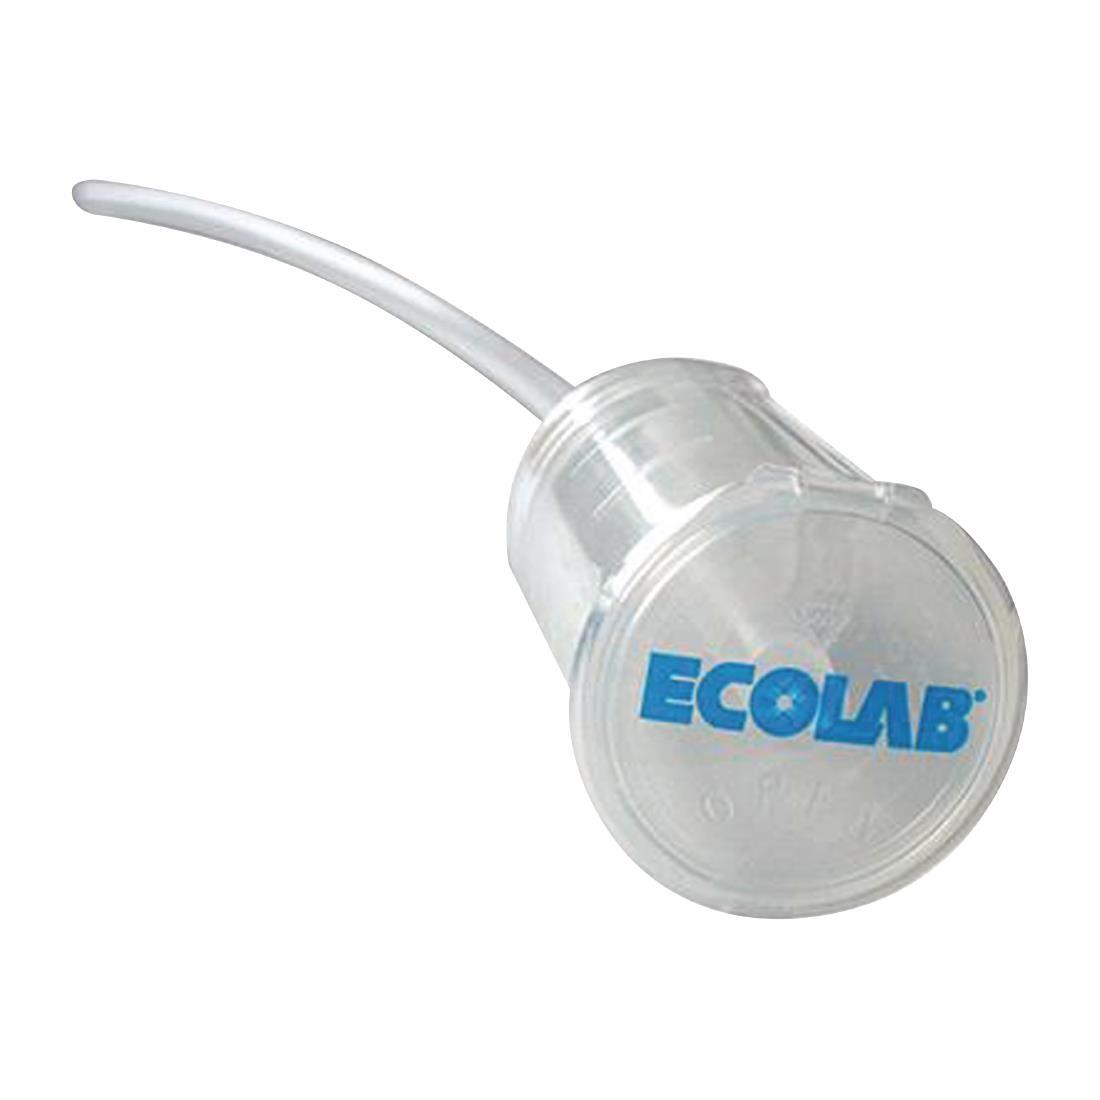 Ecolab Pelican Pump Dispenser 40mm Cap